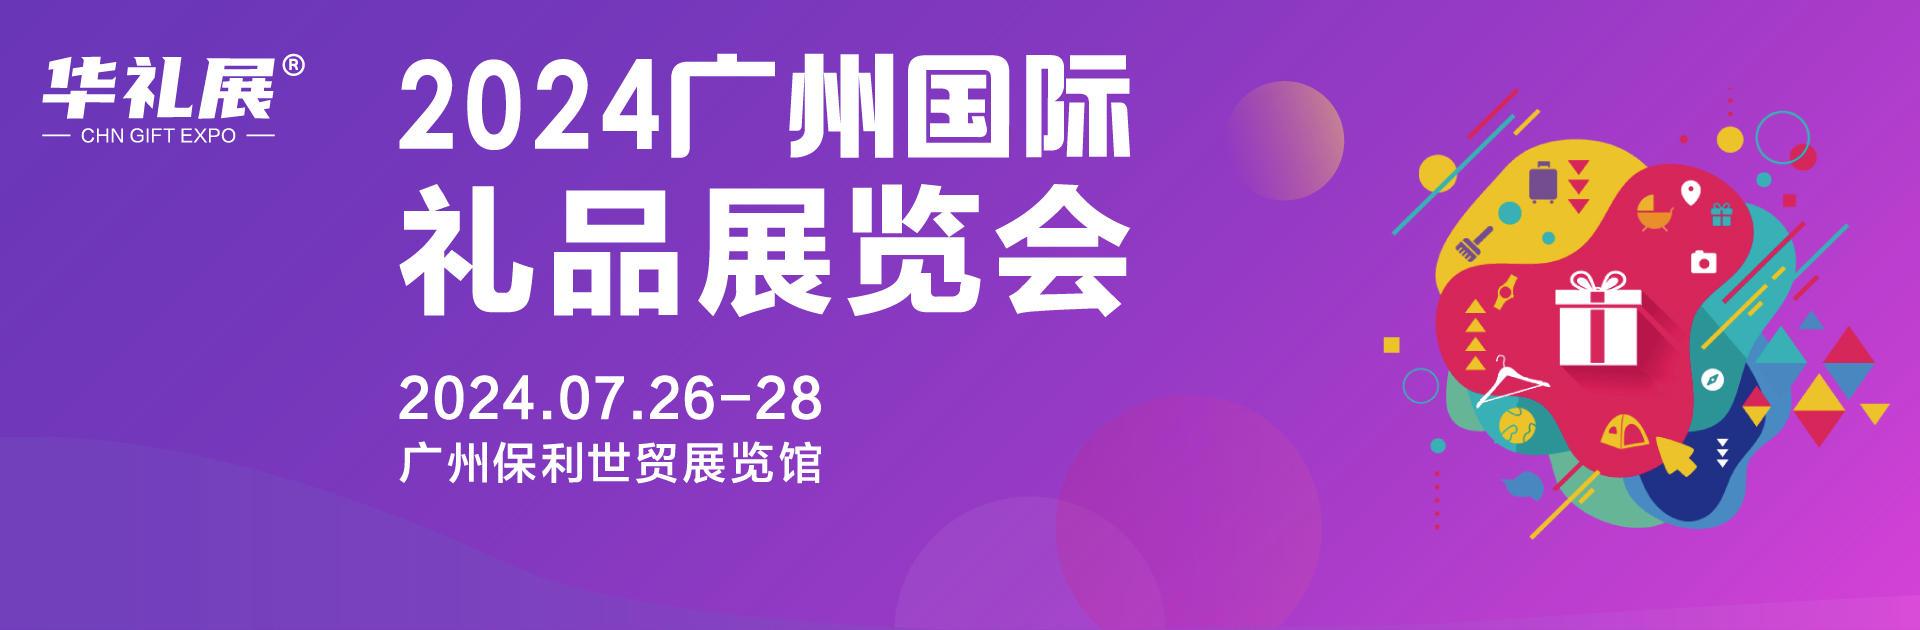 2024广州礼品展将于7月26-28日在保利世贸博览馆举办